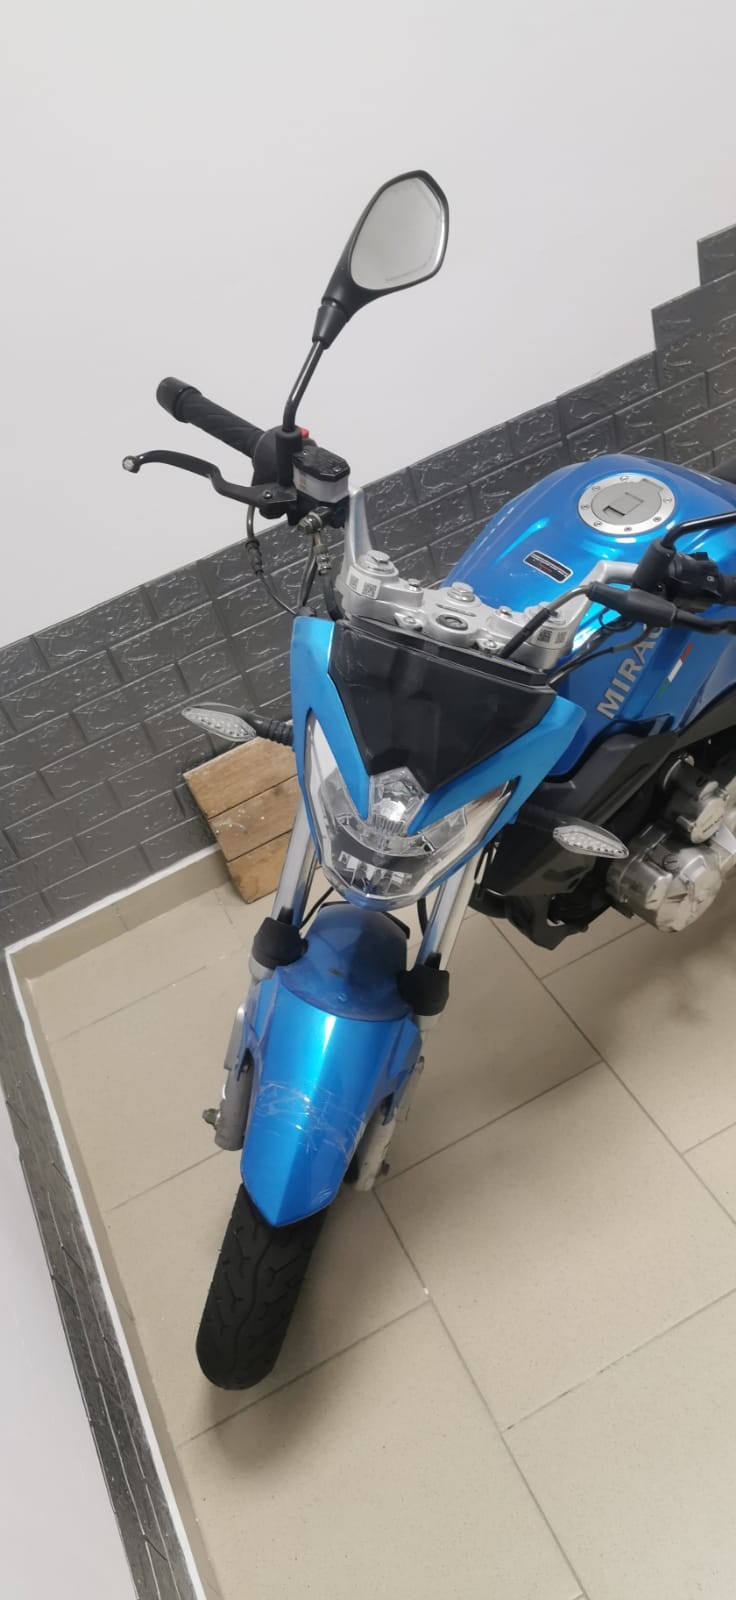 Мотоцикл Р08, 150/00, 2014 г.в., синего цвета, г/н 0084АВ06, VIN LBMPCKL21E1900651.  Обременения- ар